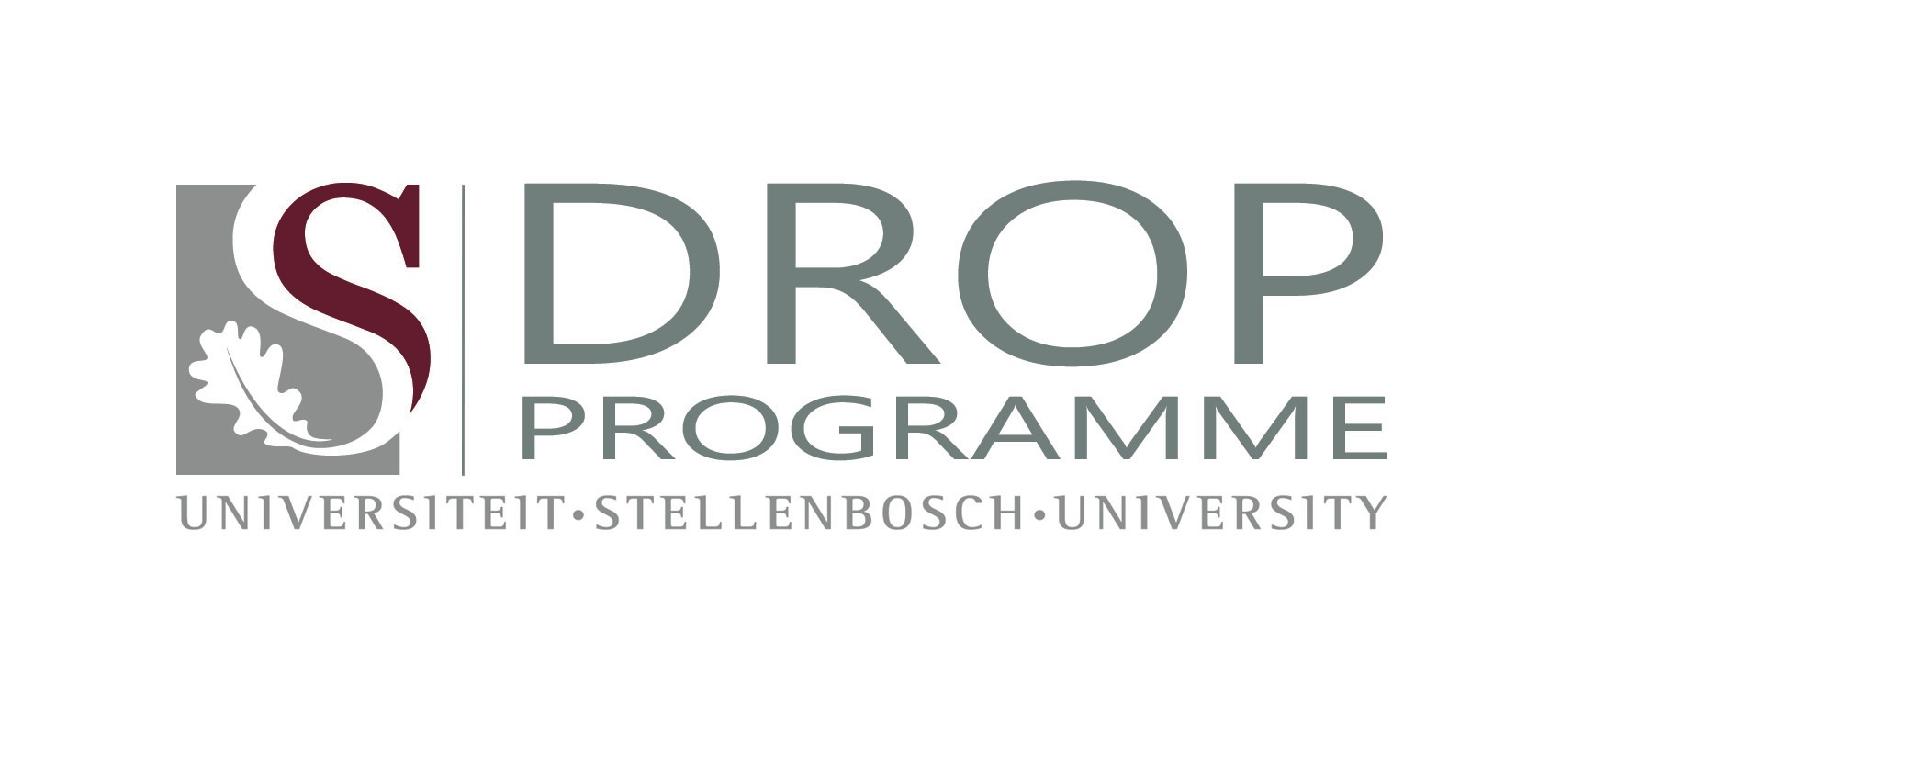 University of Stellenbosch Development and Rule of Law Programme (DROP)